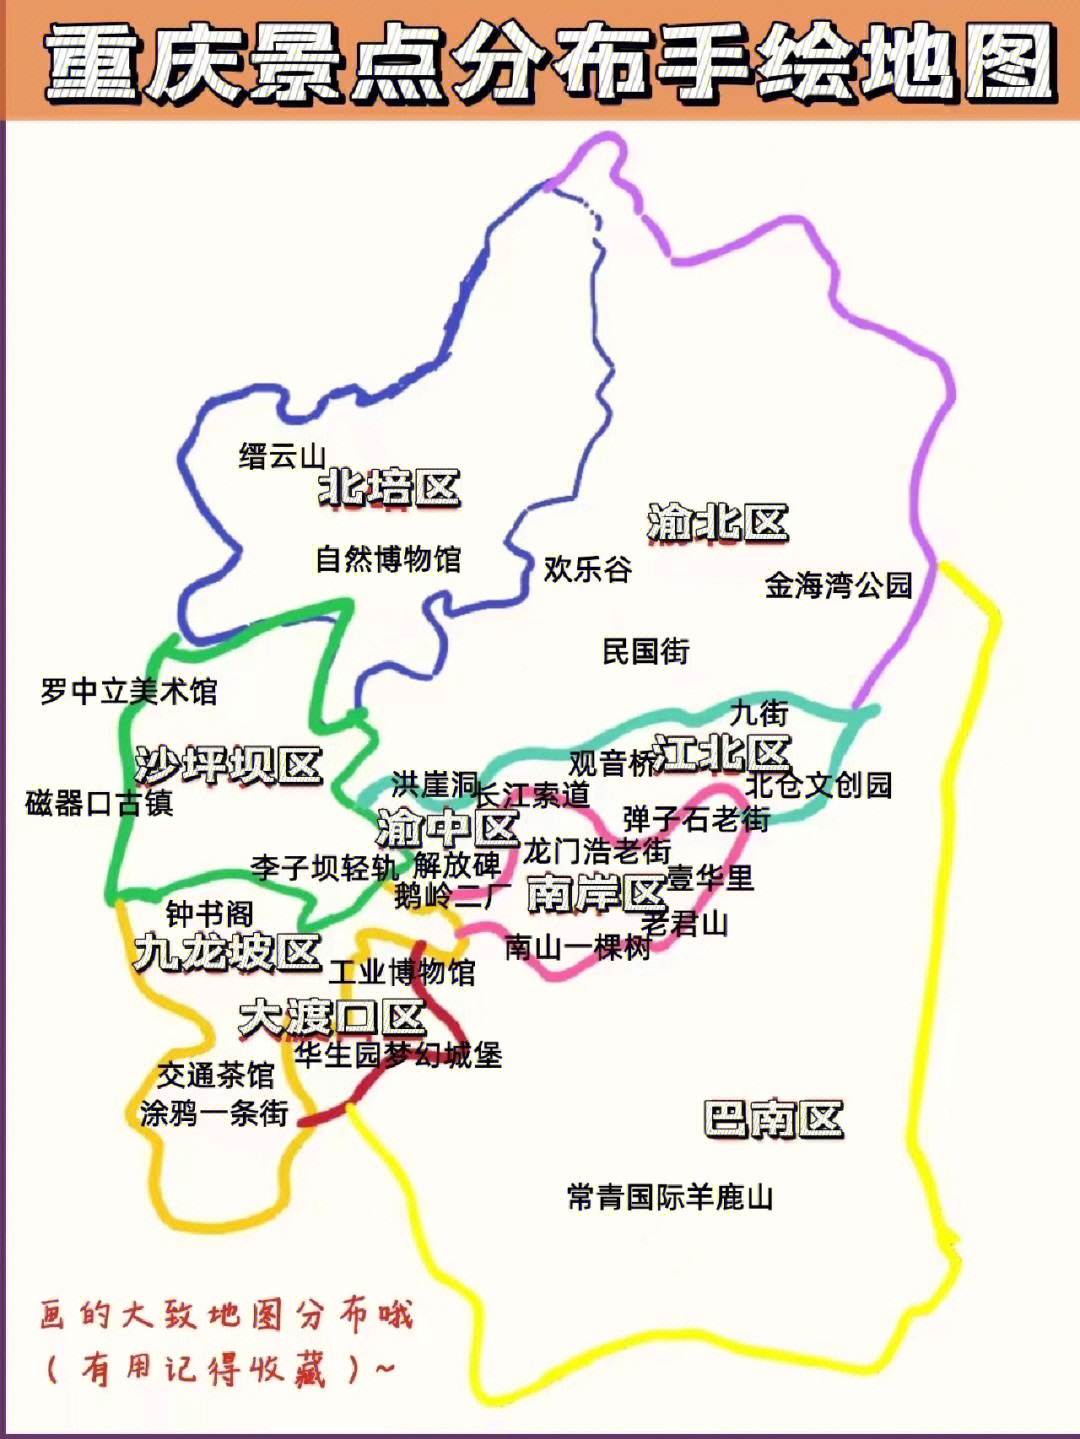 重庆本地人画的地图92旅游采访问题大全